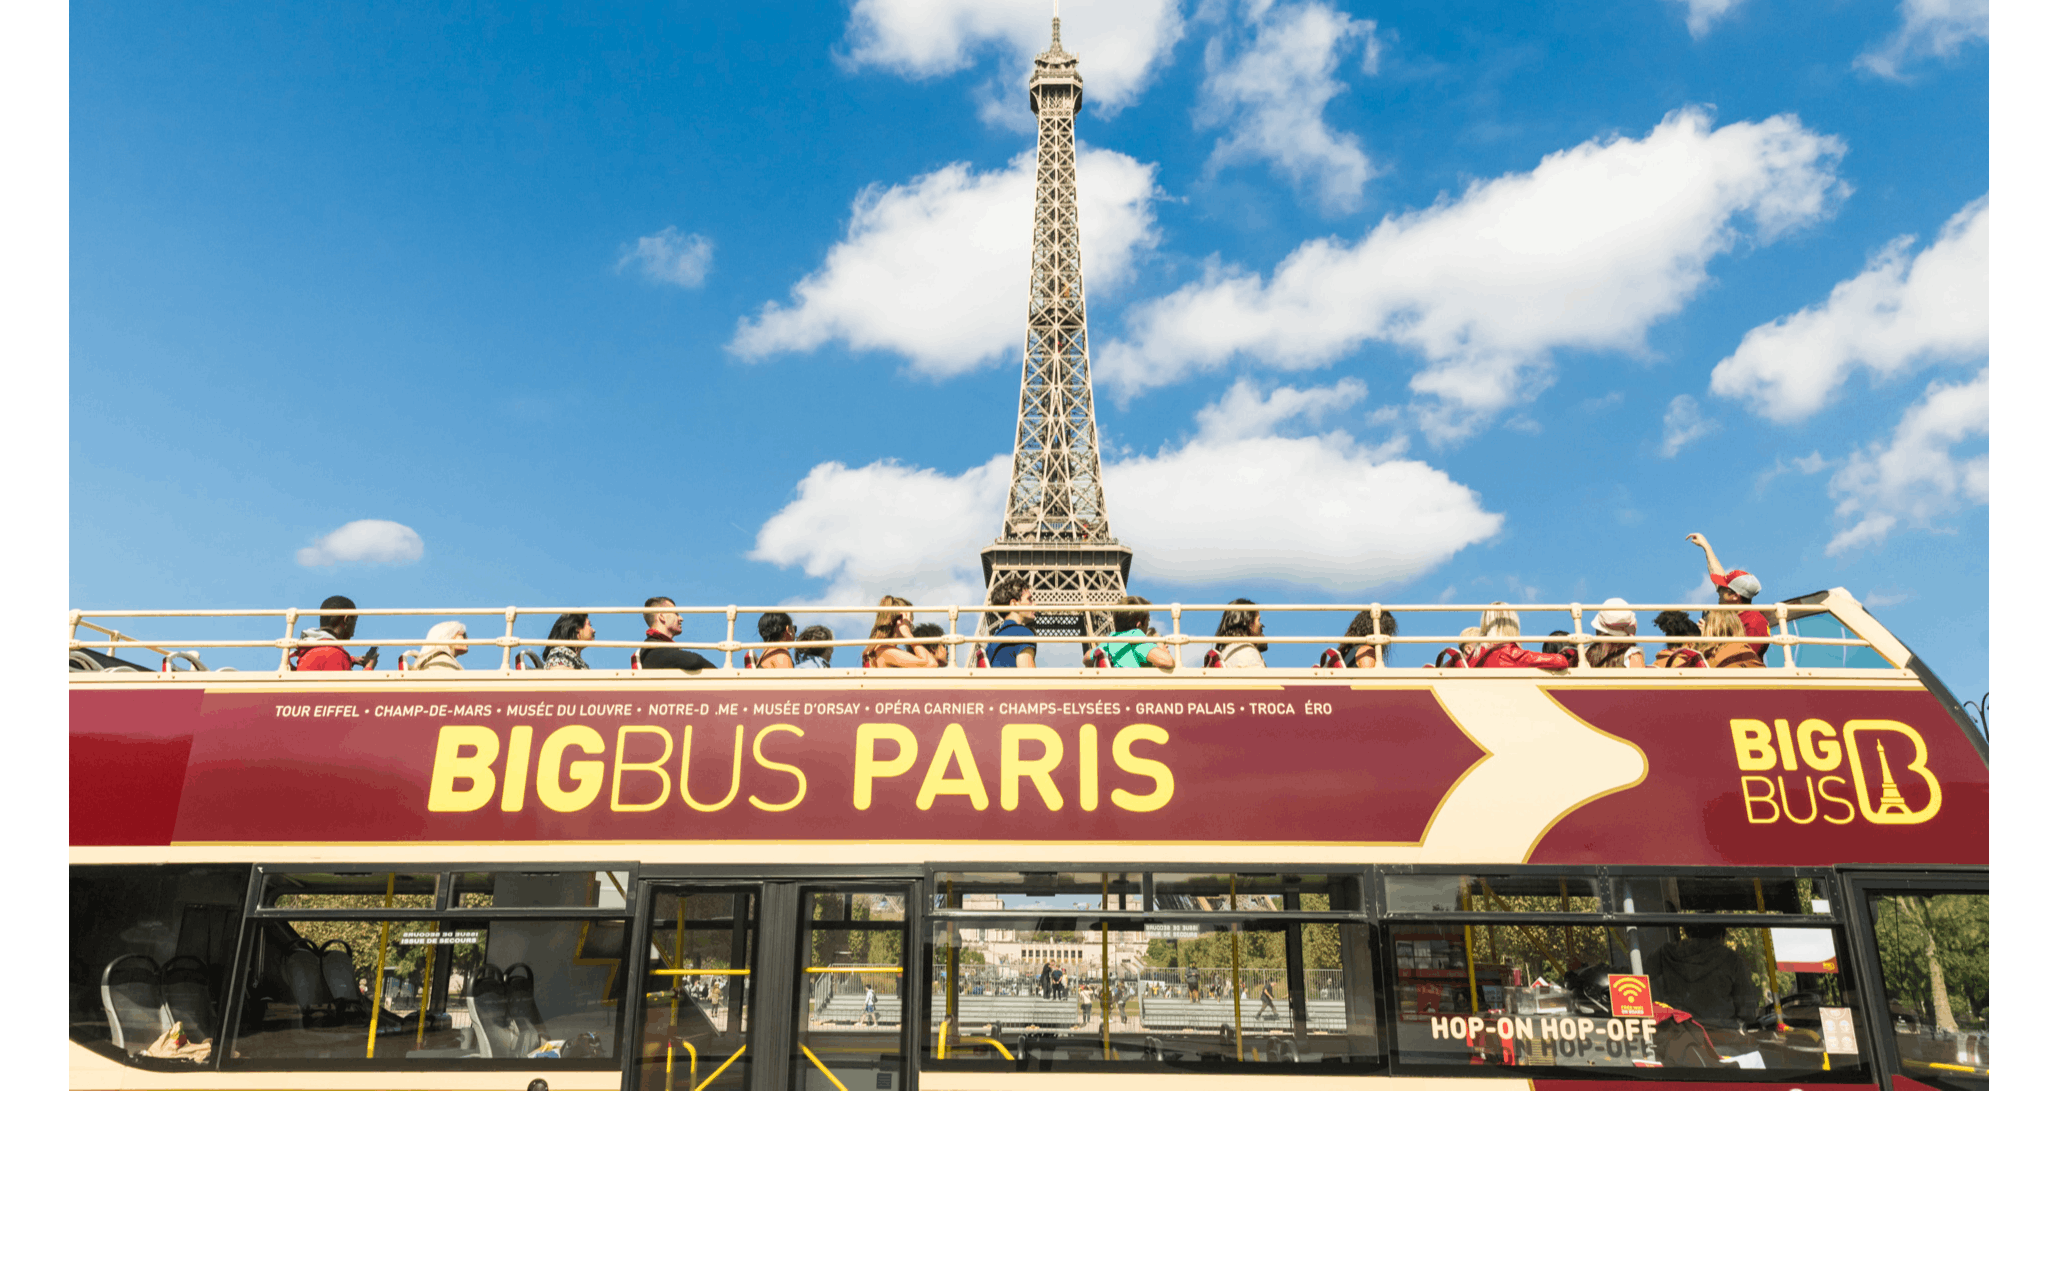 Excursão Big Bus hop-on hop-off de 48 horas em Paris com cruzeiro panorâmico no rio